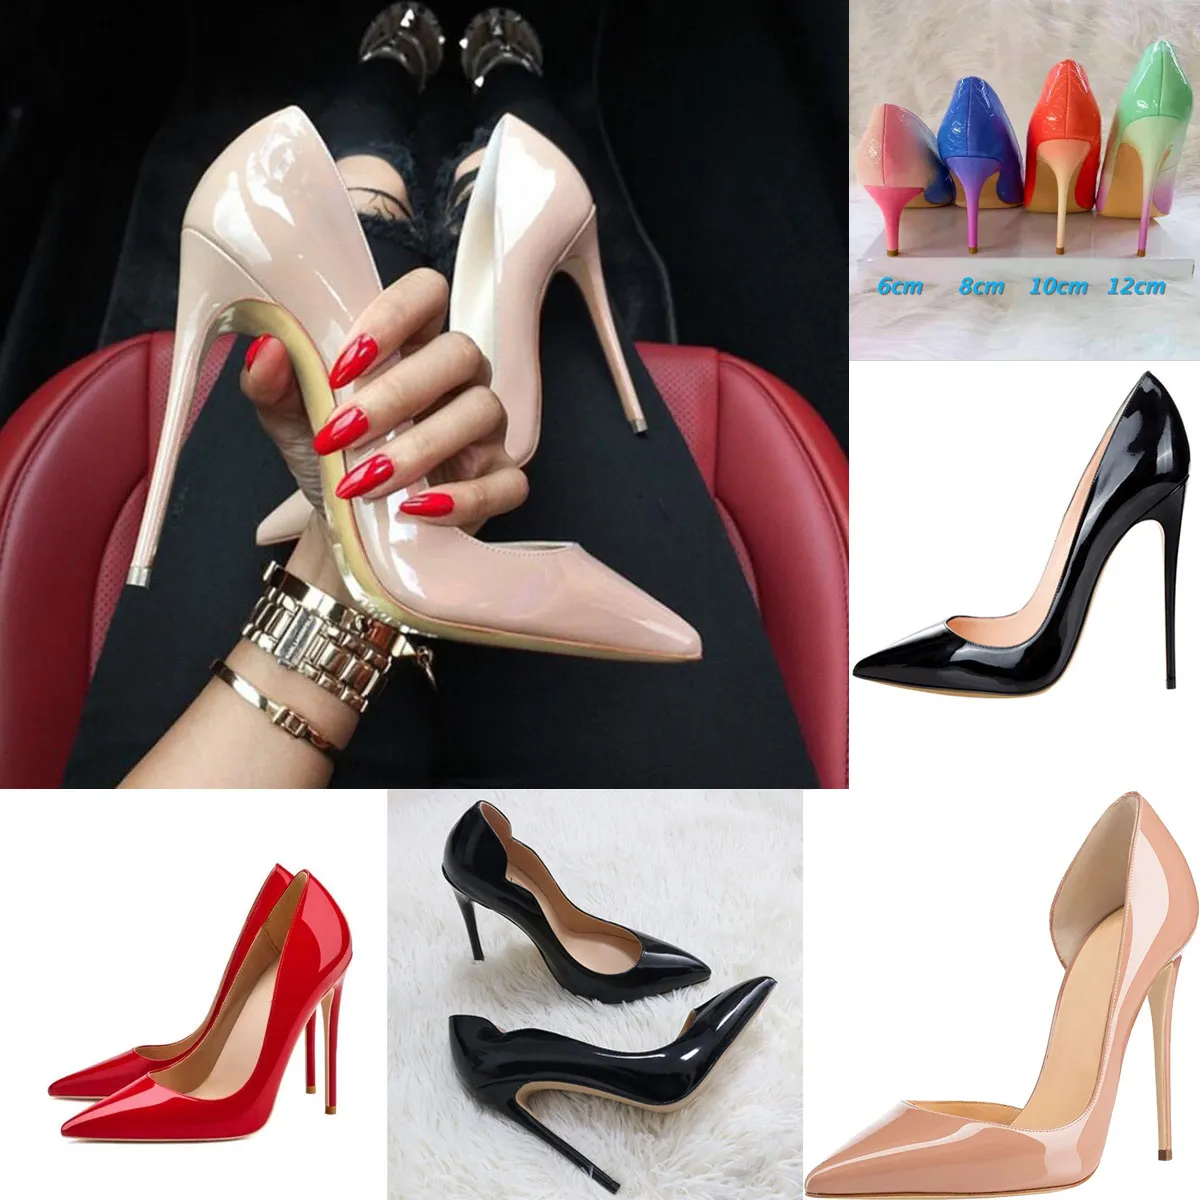 Zapatos de lujo estilo estrella para mujeres rojo brillante de la marca marca zapato de tacón alto zapato de boda zapato de boda